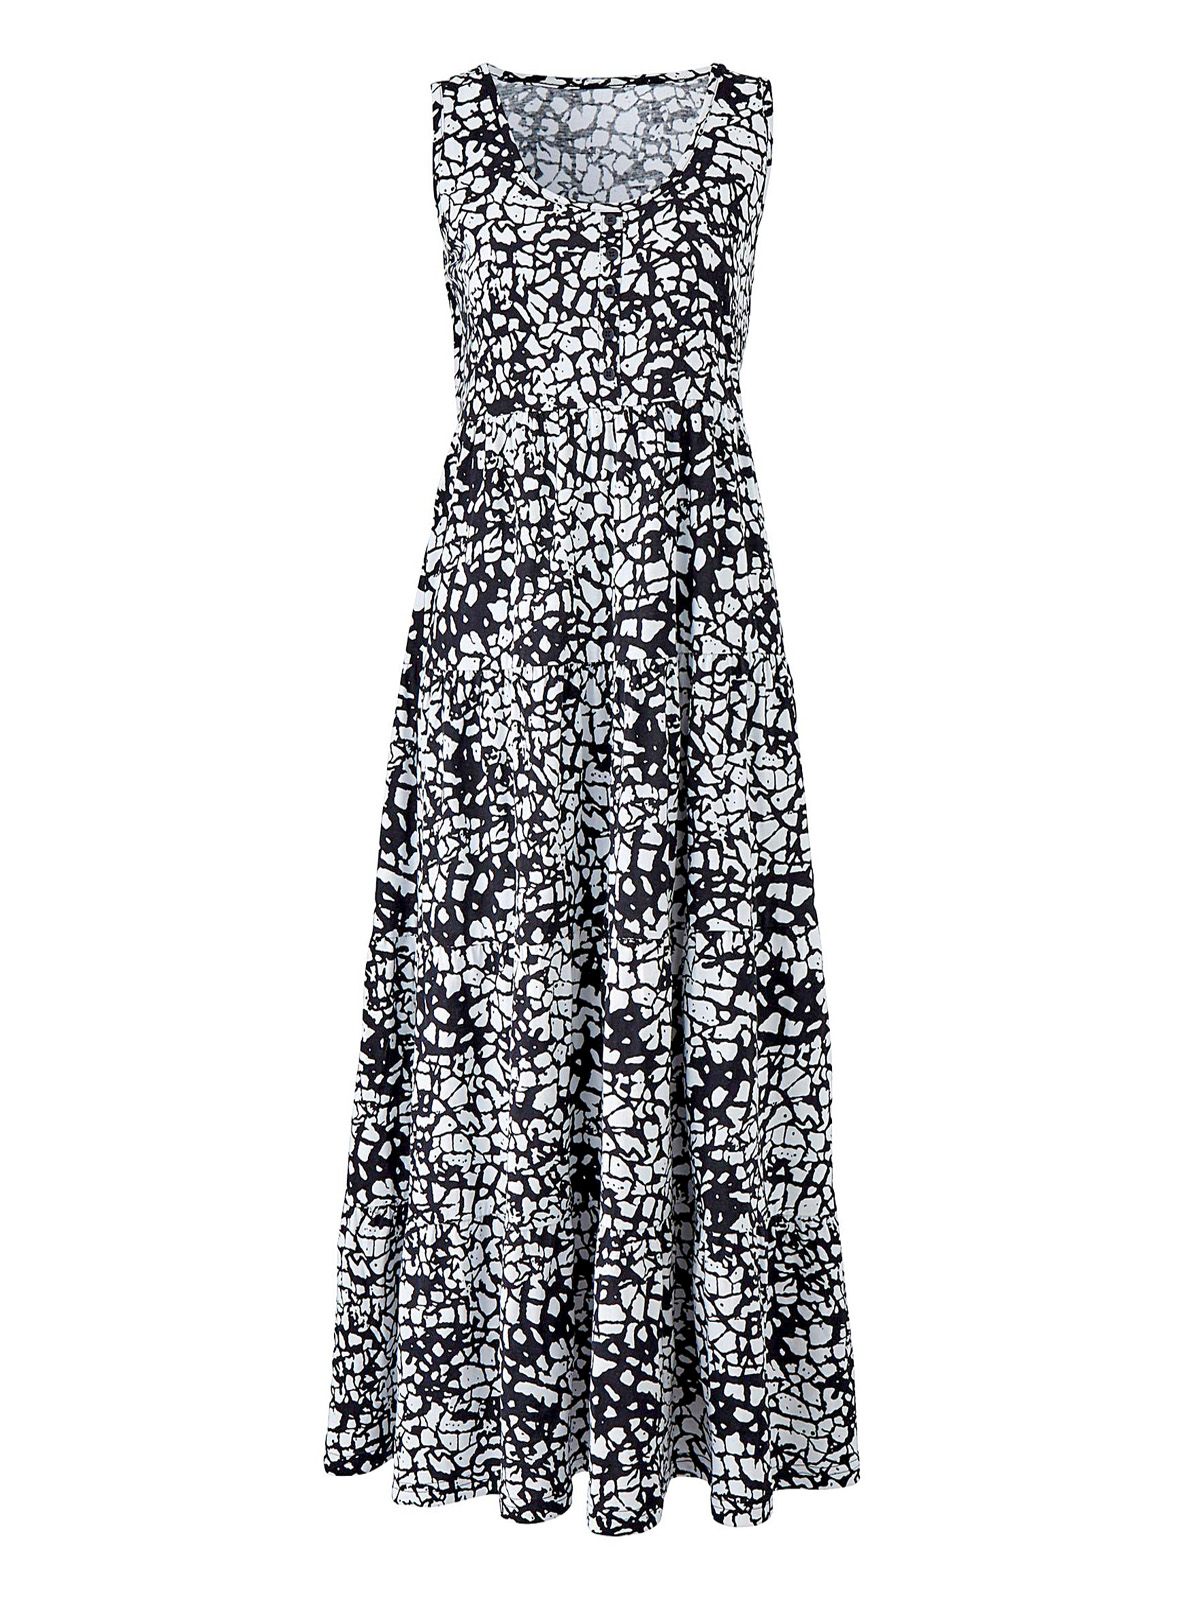 Julipa - - Julipa BLACK Printed Tiered Jersey Maxi Dress - Size 10 to 30